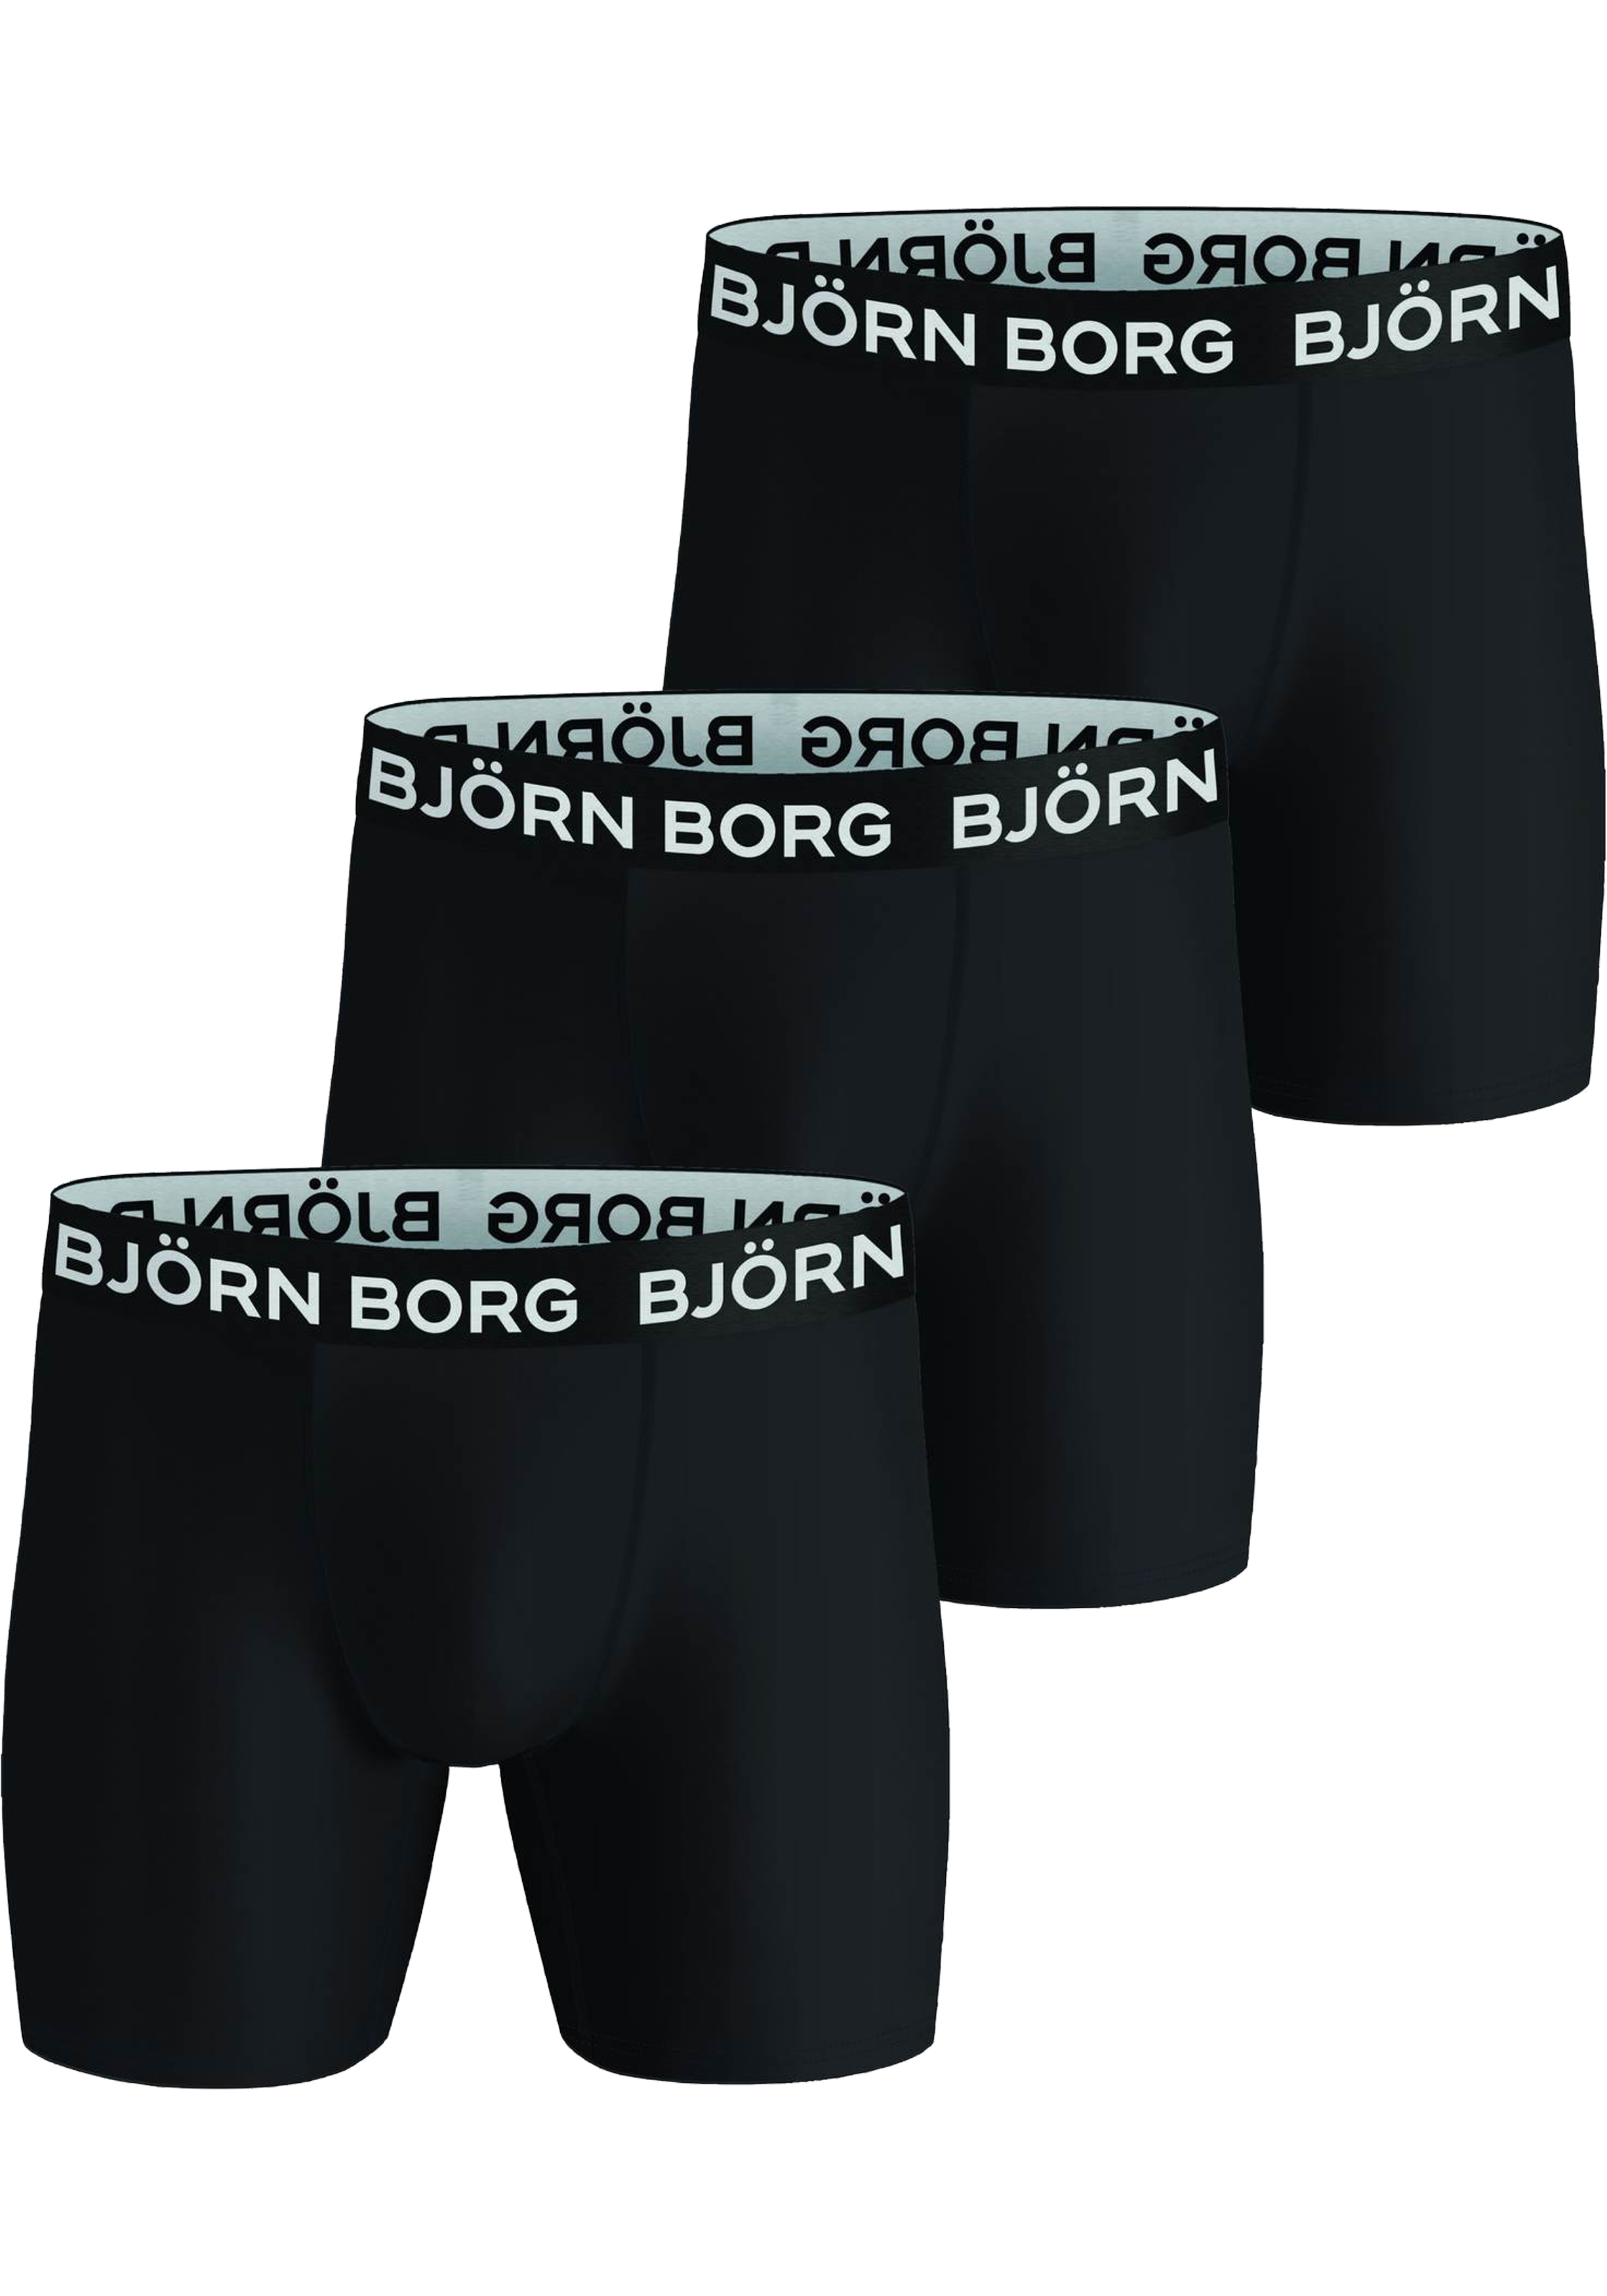 Bjorn Borg Performance boxers, microfiber heren boxers lange pijpen (3-pack), zwart